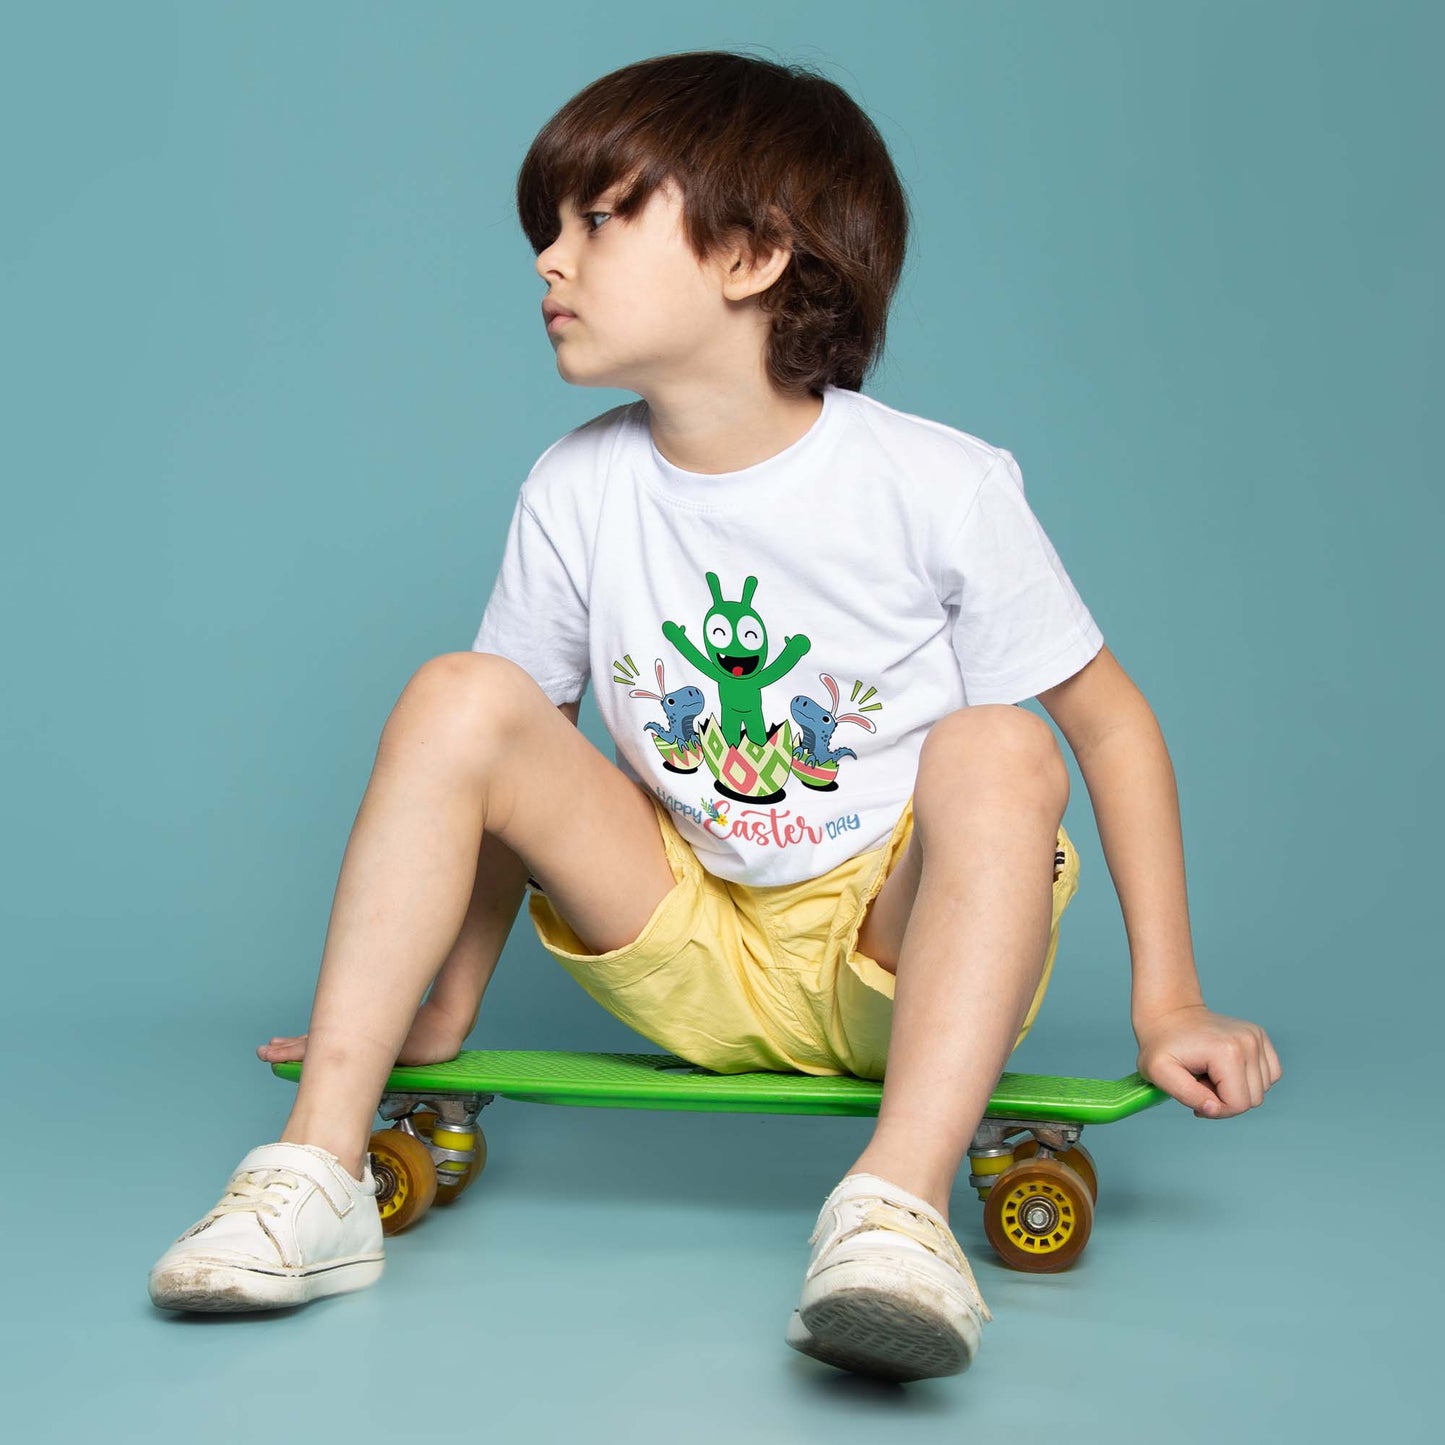 Pea Pea aparece el día de Pascua con la camiseta juvenil T Rex